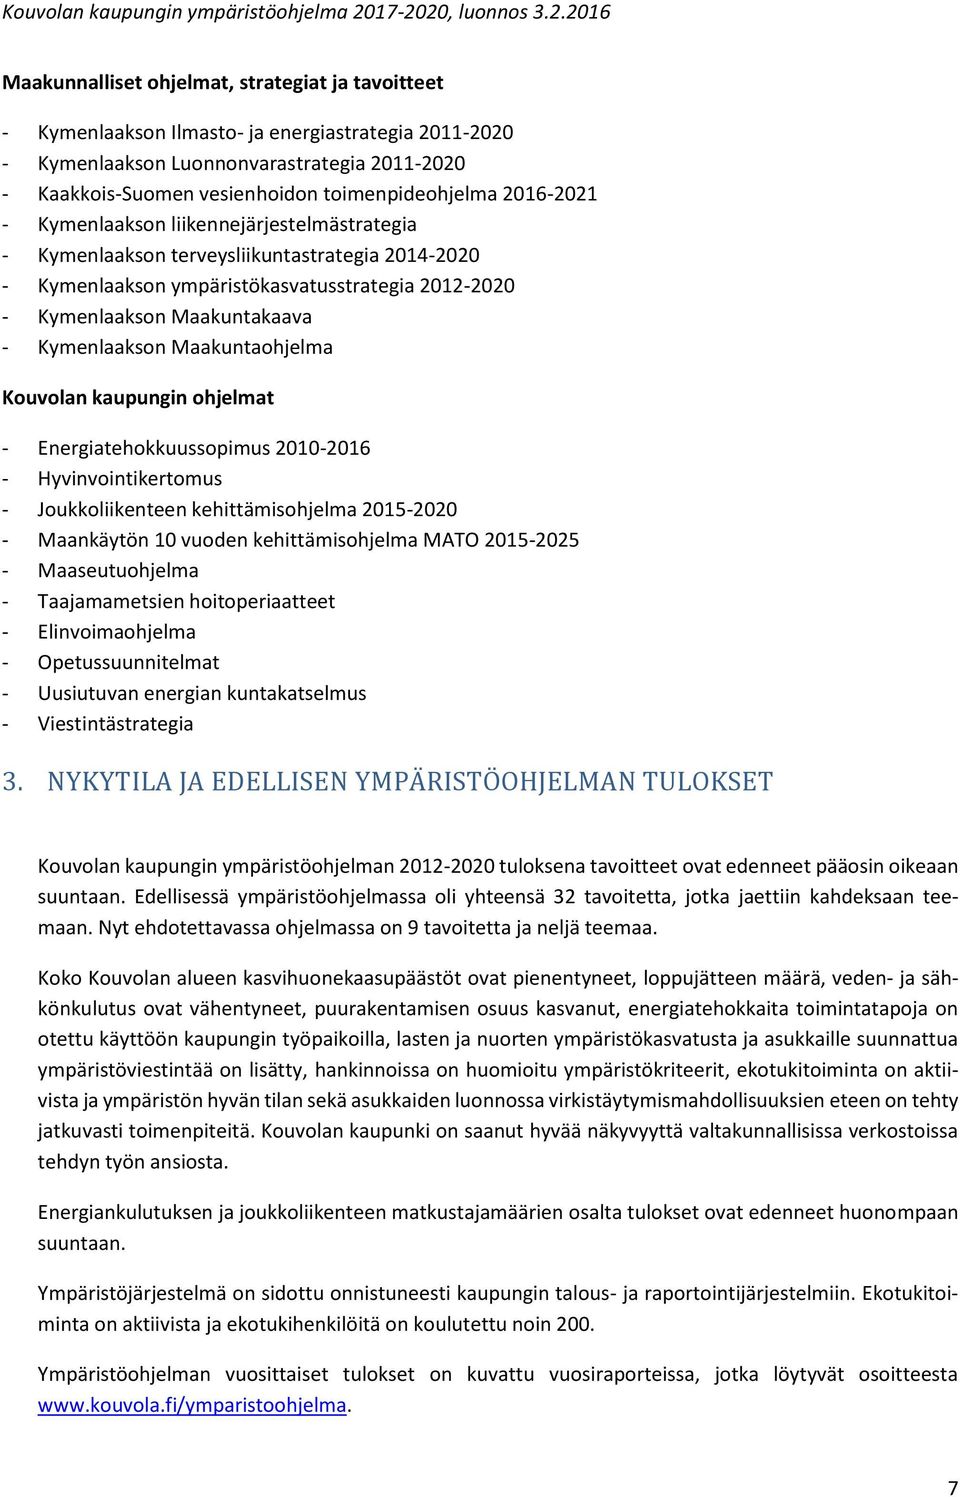 Maakuntaohjelma Kouvolan kaupungin ohjelmat - Energiatehokkuussopimus 2010-2016 - Hyvinvointikertomus - Joukkoliikenteen kehittämisohjelma 2015-2020 - Maankäytön 10 vuoden kehittämisohjelma MATO